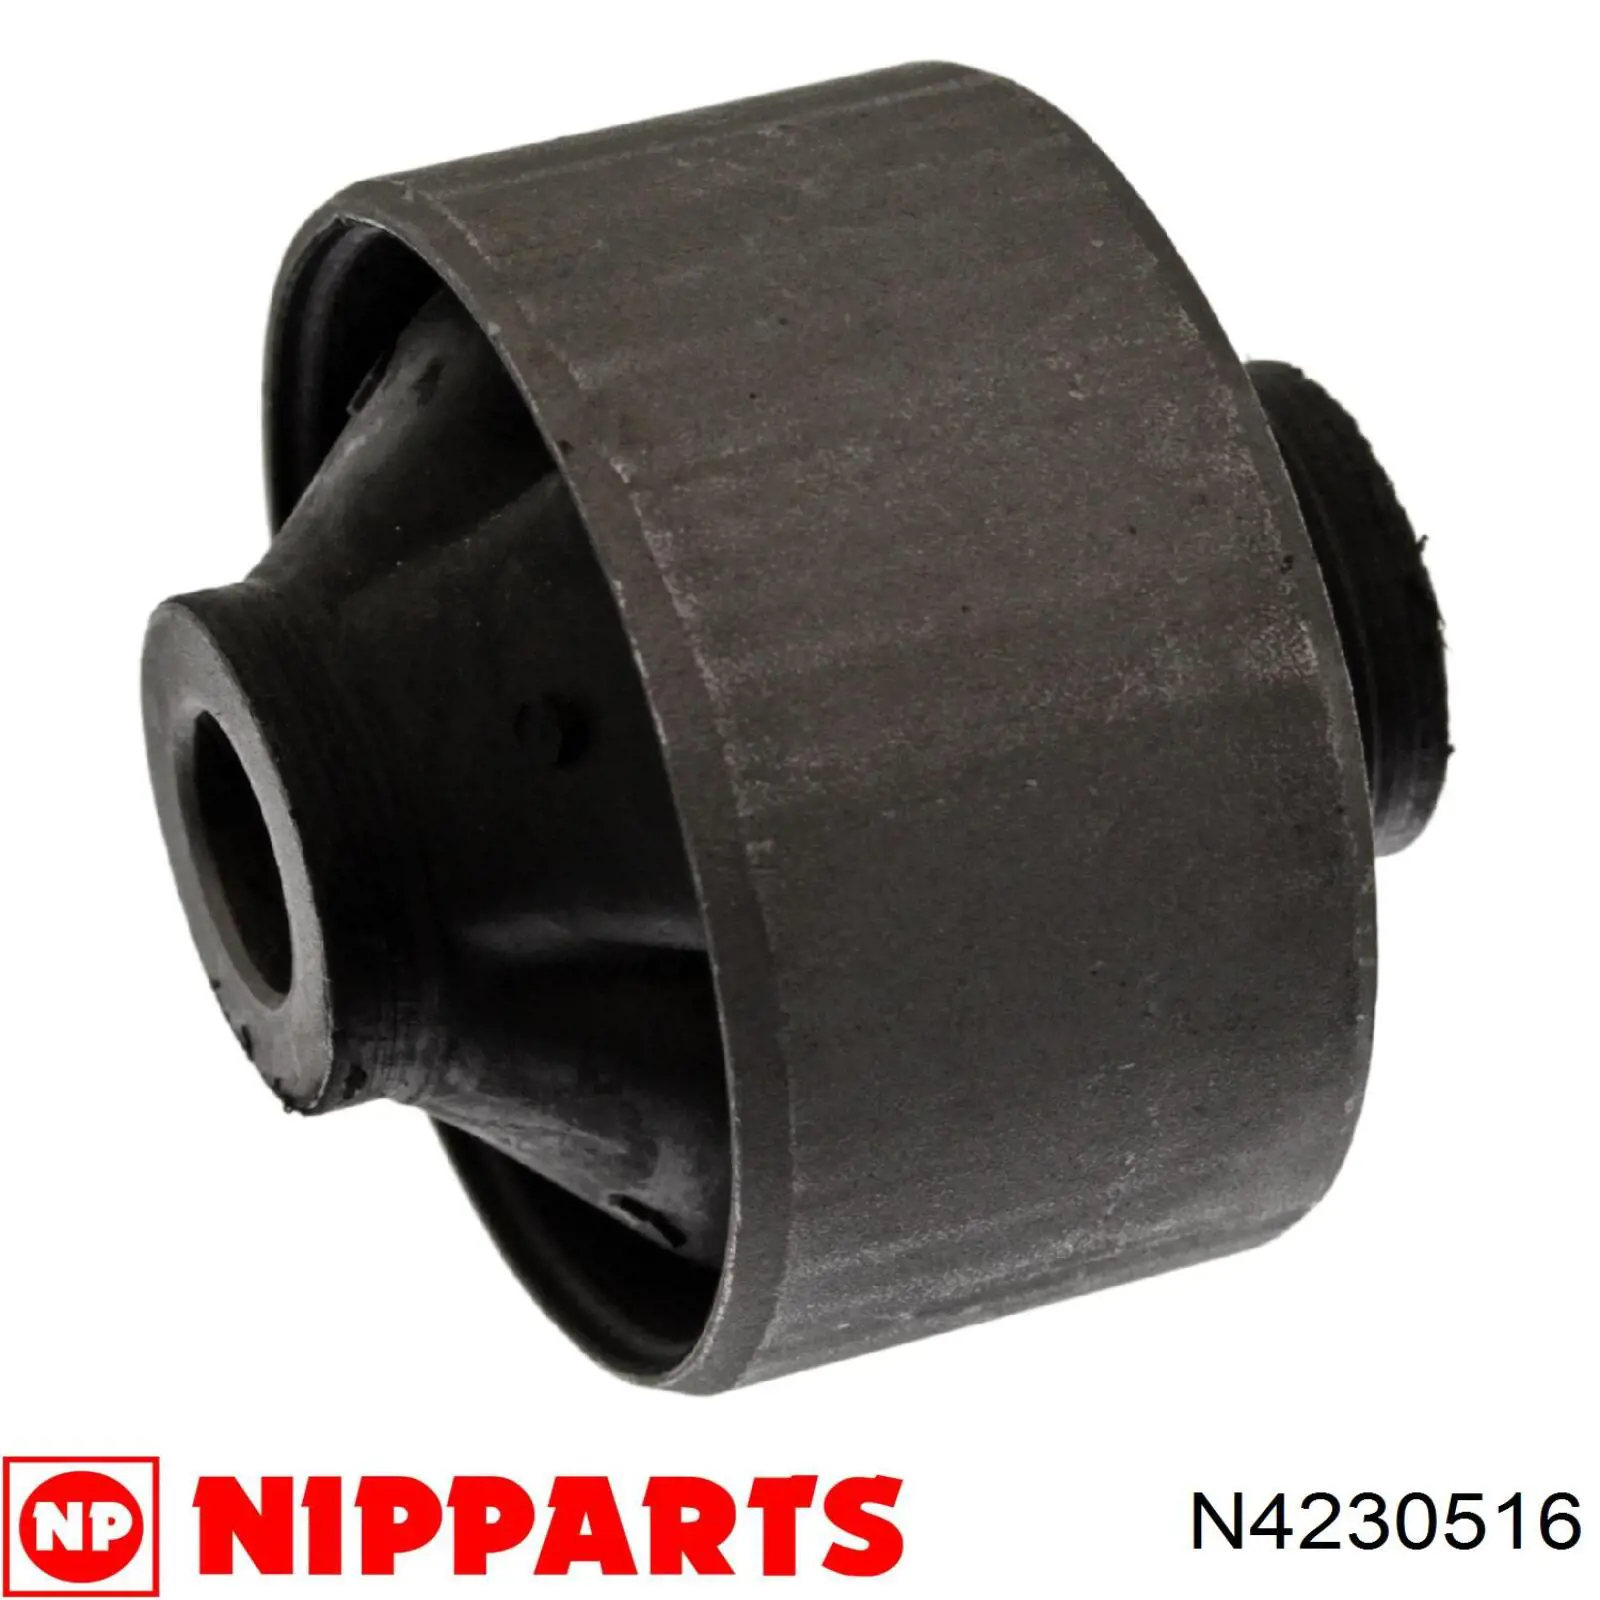 N4230516 Nipparts silentblock de suspensión delantero inferior